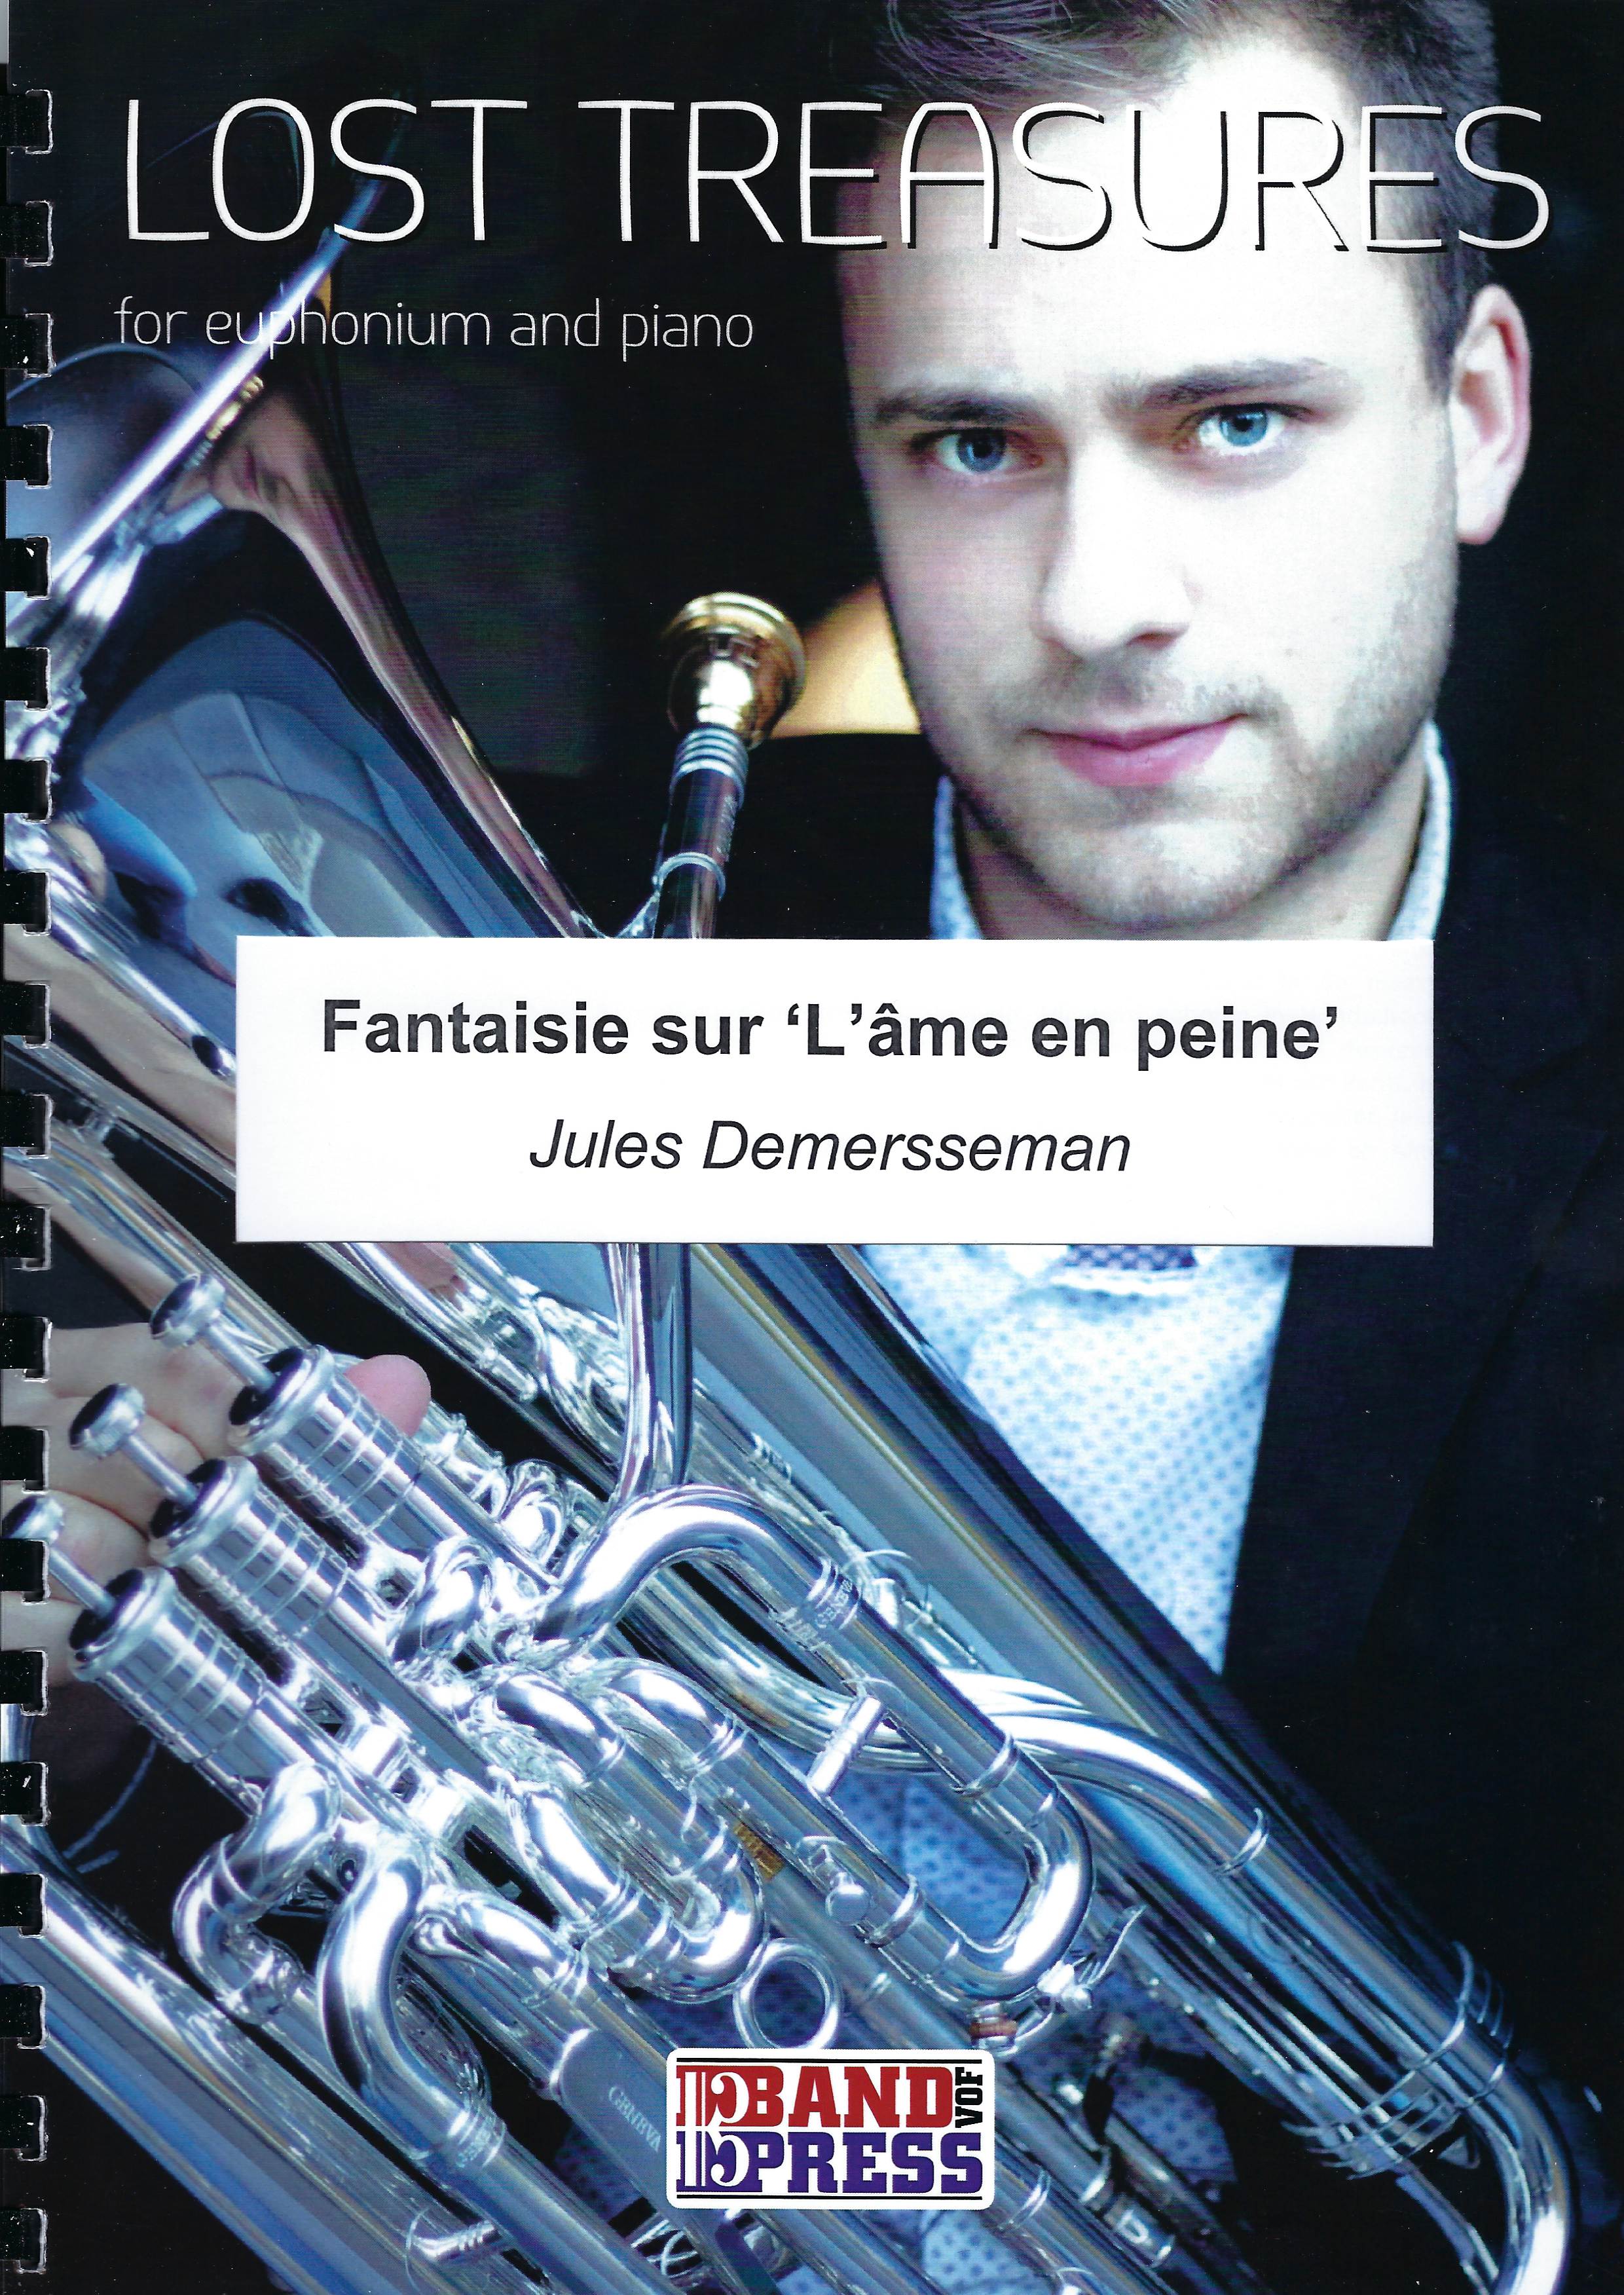 Fantasie sur 'L'ame en Peine' - Jules Demersseman - Euph and Piano (Lost Treasures Series)